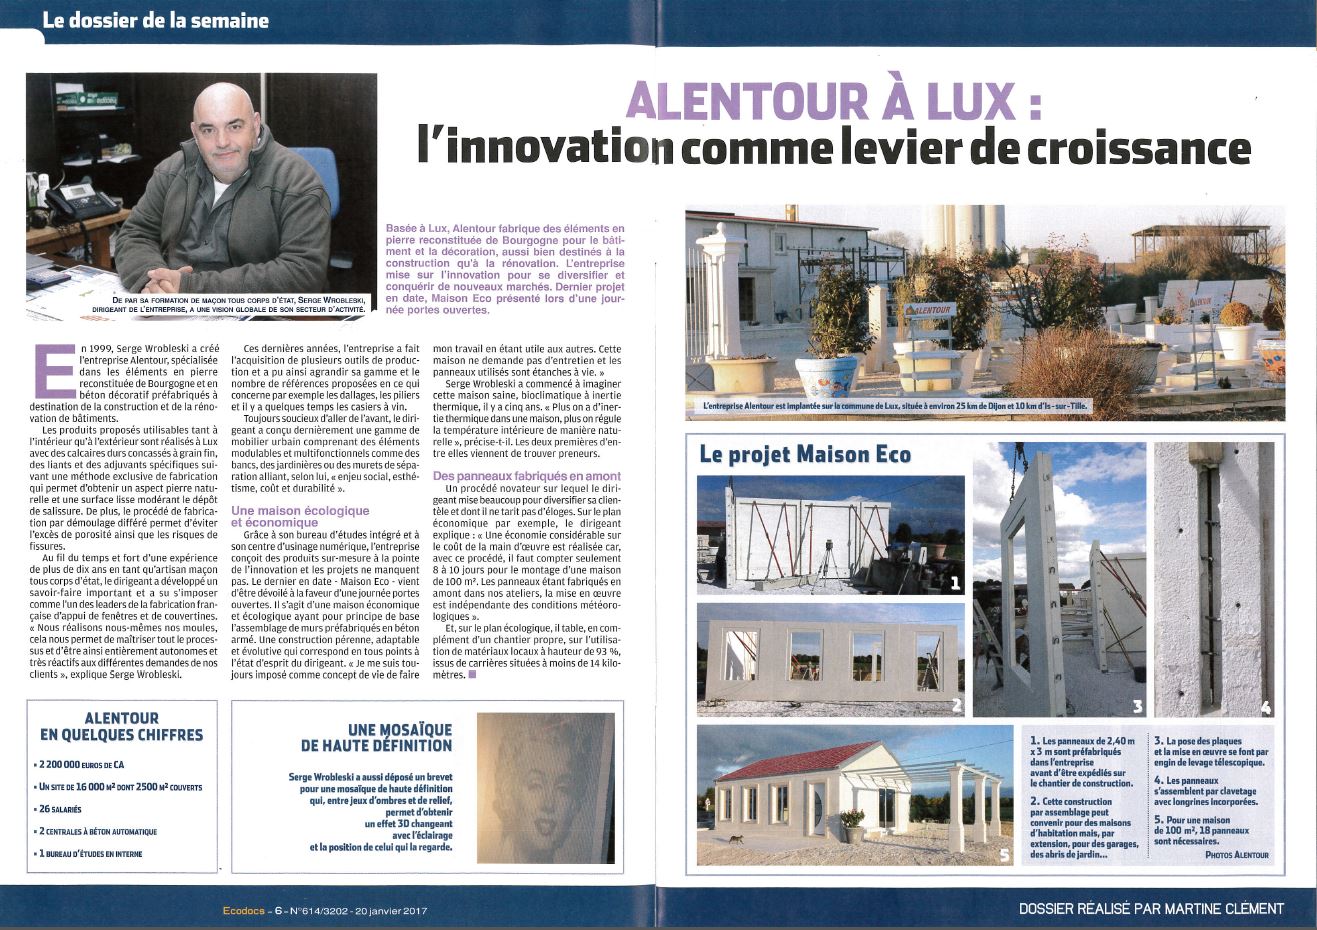 Ecodocs-Serge-Wrobleski-Alentour-Lux-Cote-d-Or-pierre-reconstituee-innovation-levier-de-croissance-3